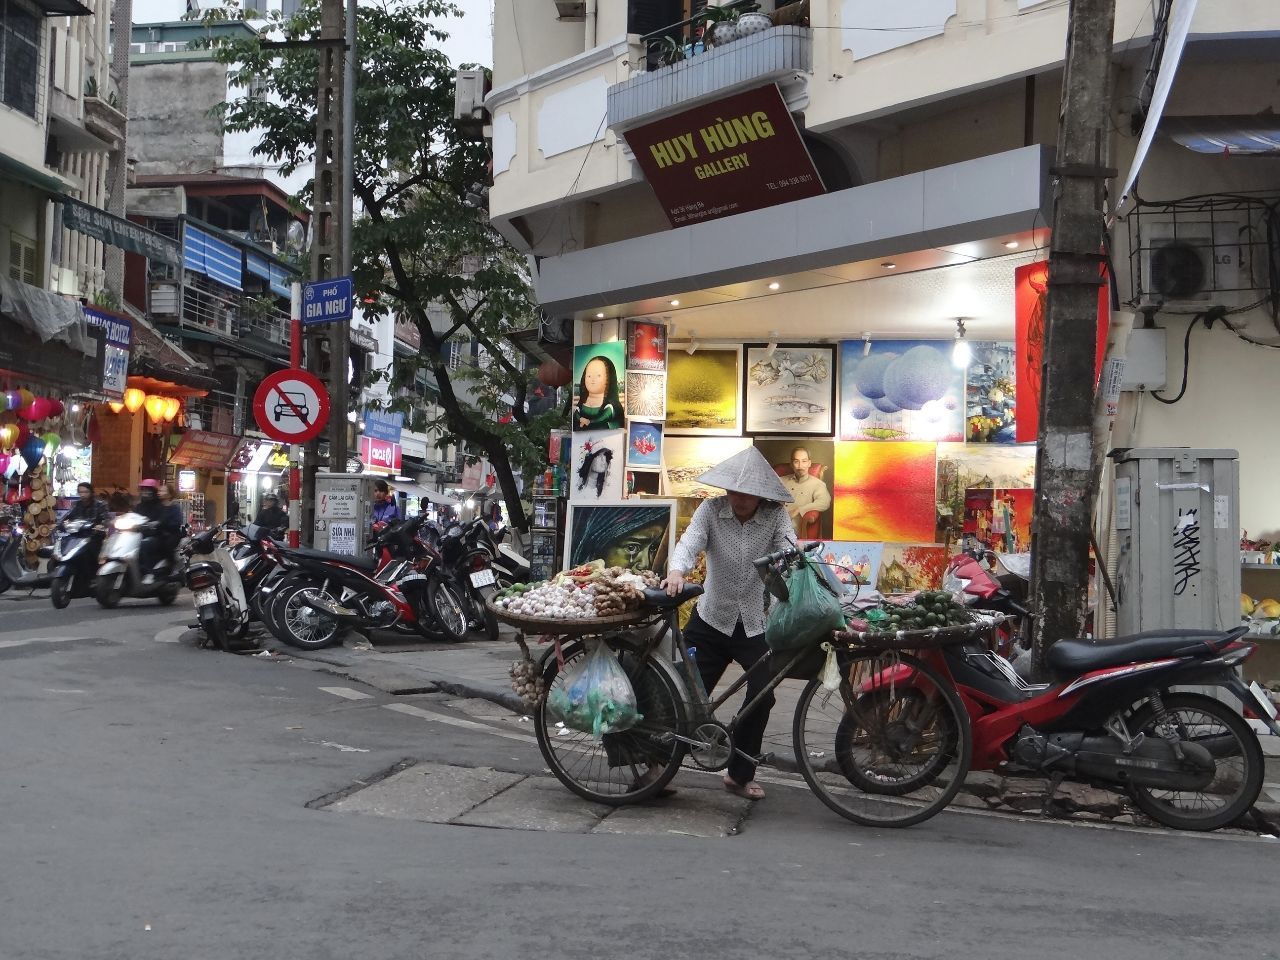 погуляли по улочкам.... даже пошопиться успели... во вьетнаме много теплой одежды производят известных брендов, а т.к. там не так холодно, поэтому шорты по цене хорошего пуховика висят рядом. - Фотоотчет Вьетнам 2019. Часть 1 - день 1